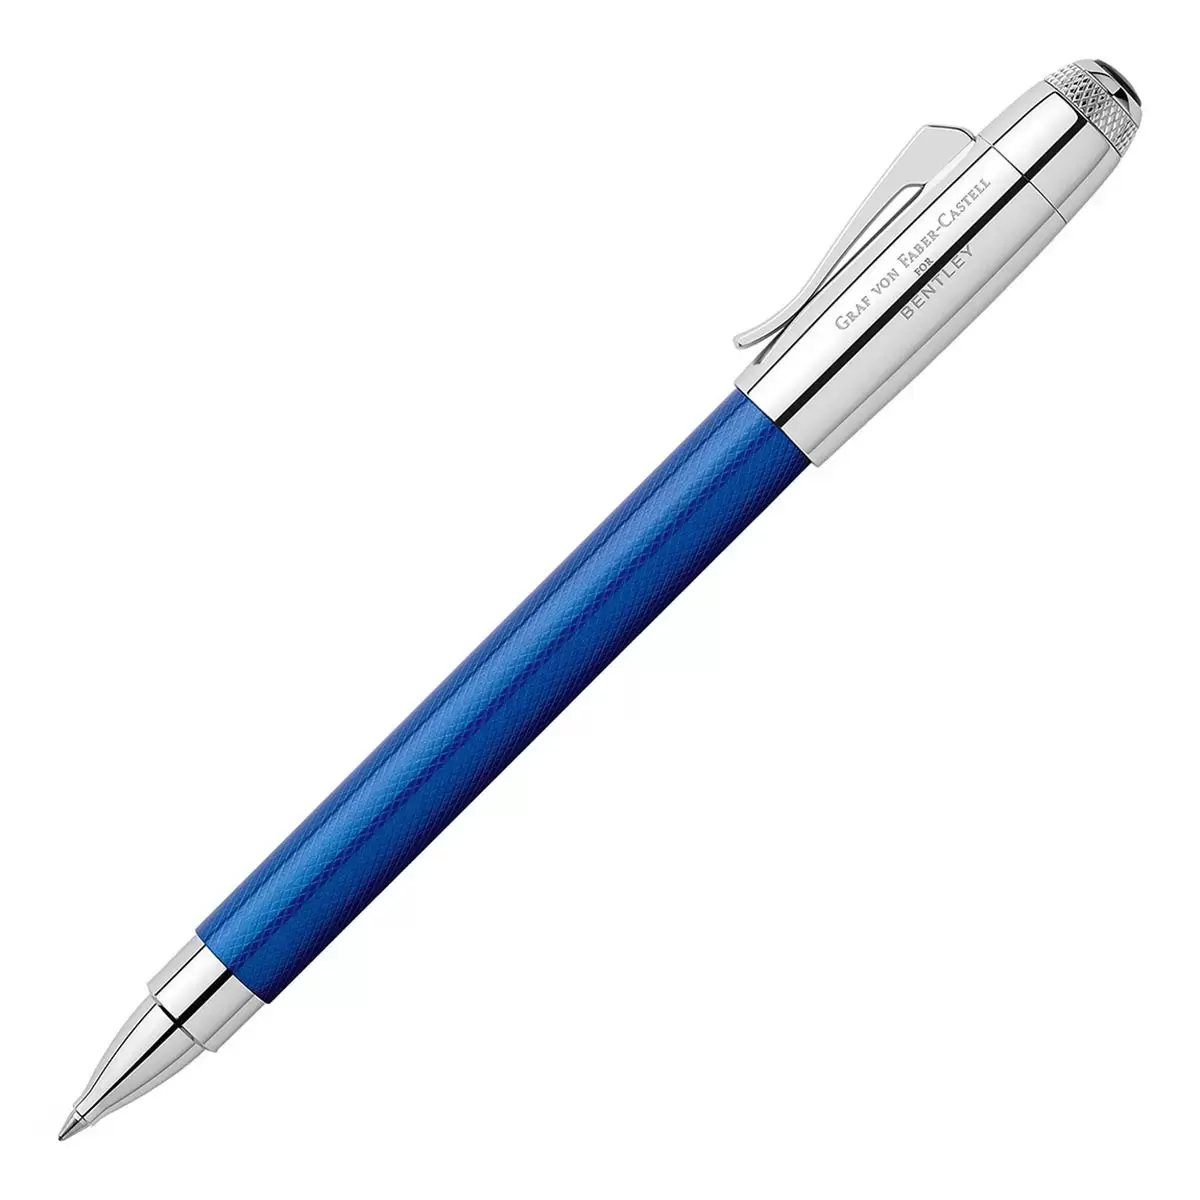 Graf Von Faber-Castell賓利聯名鋼珠筆 寶石藍